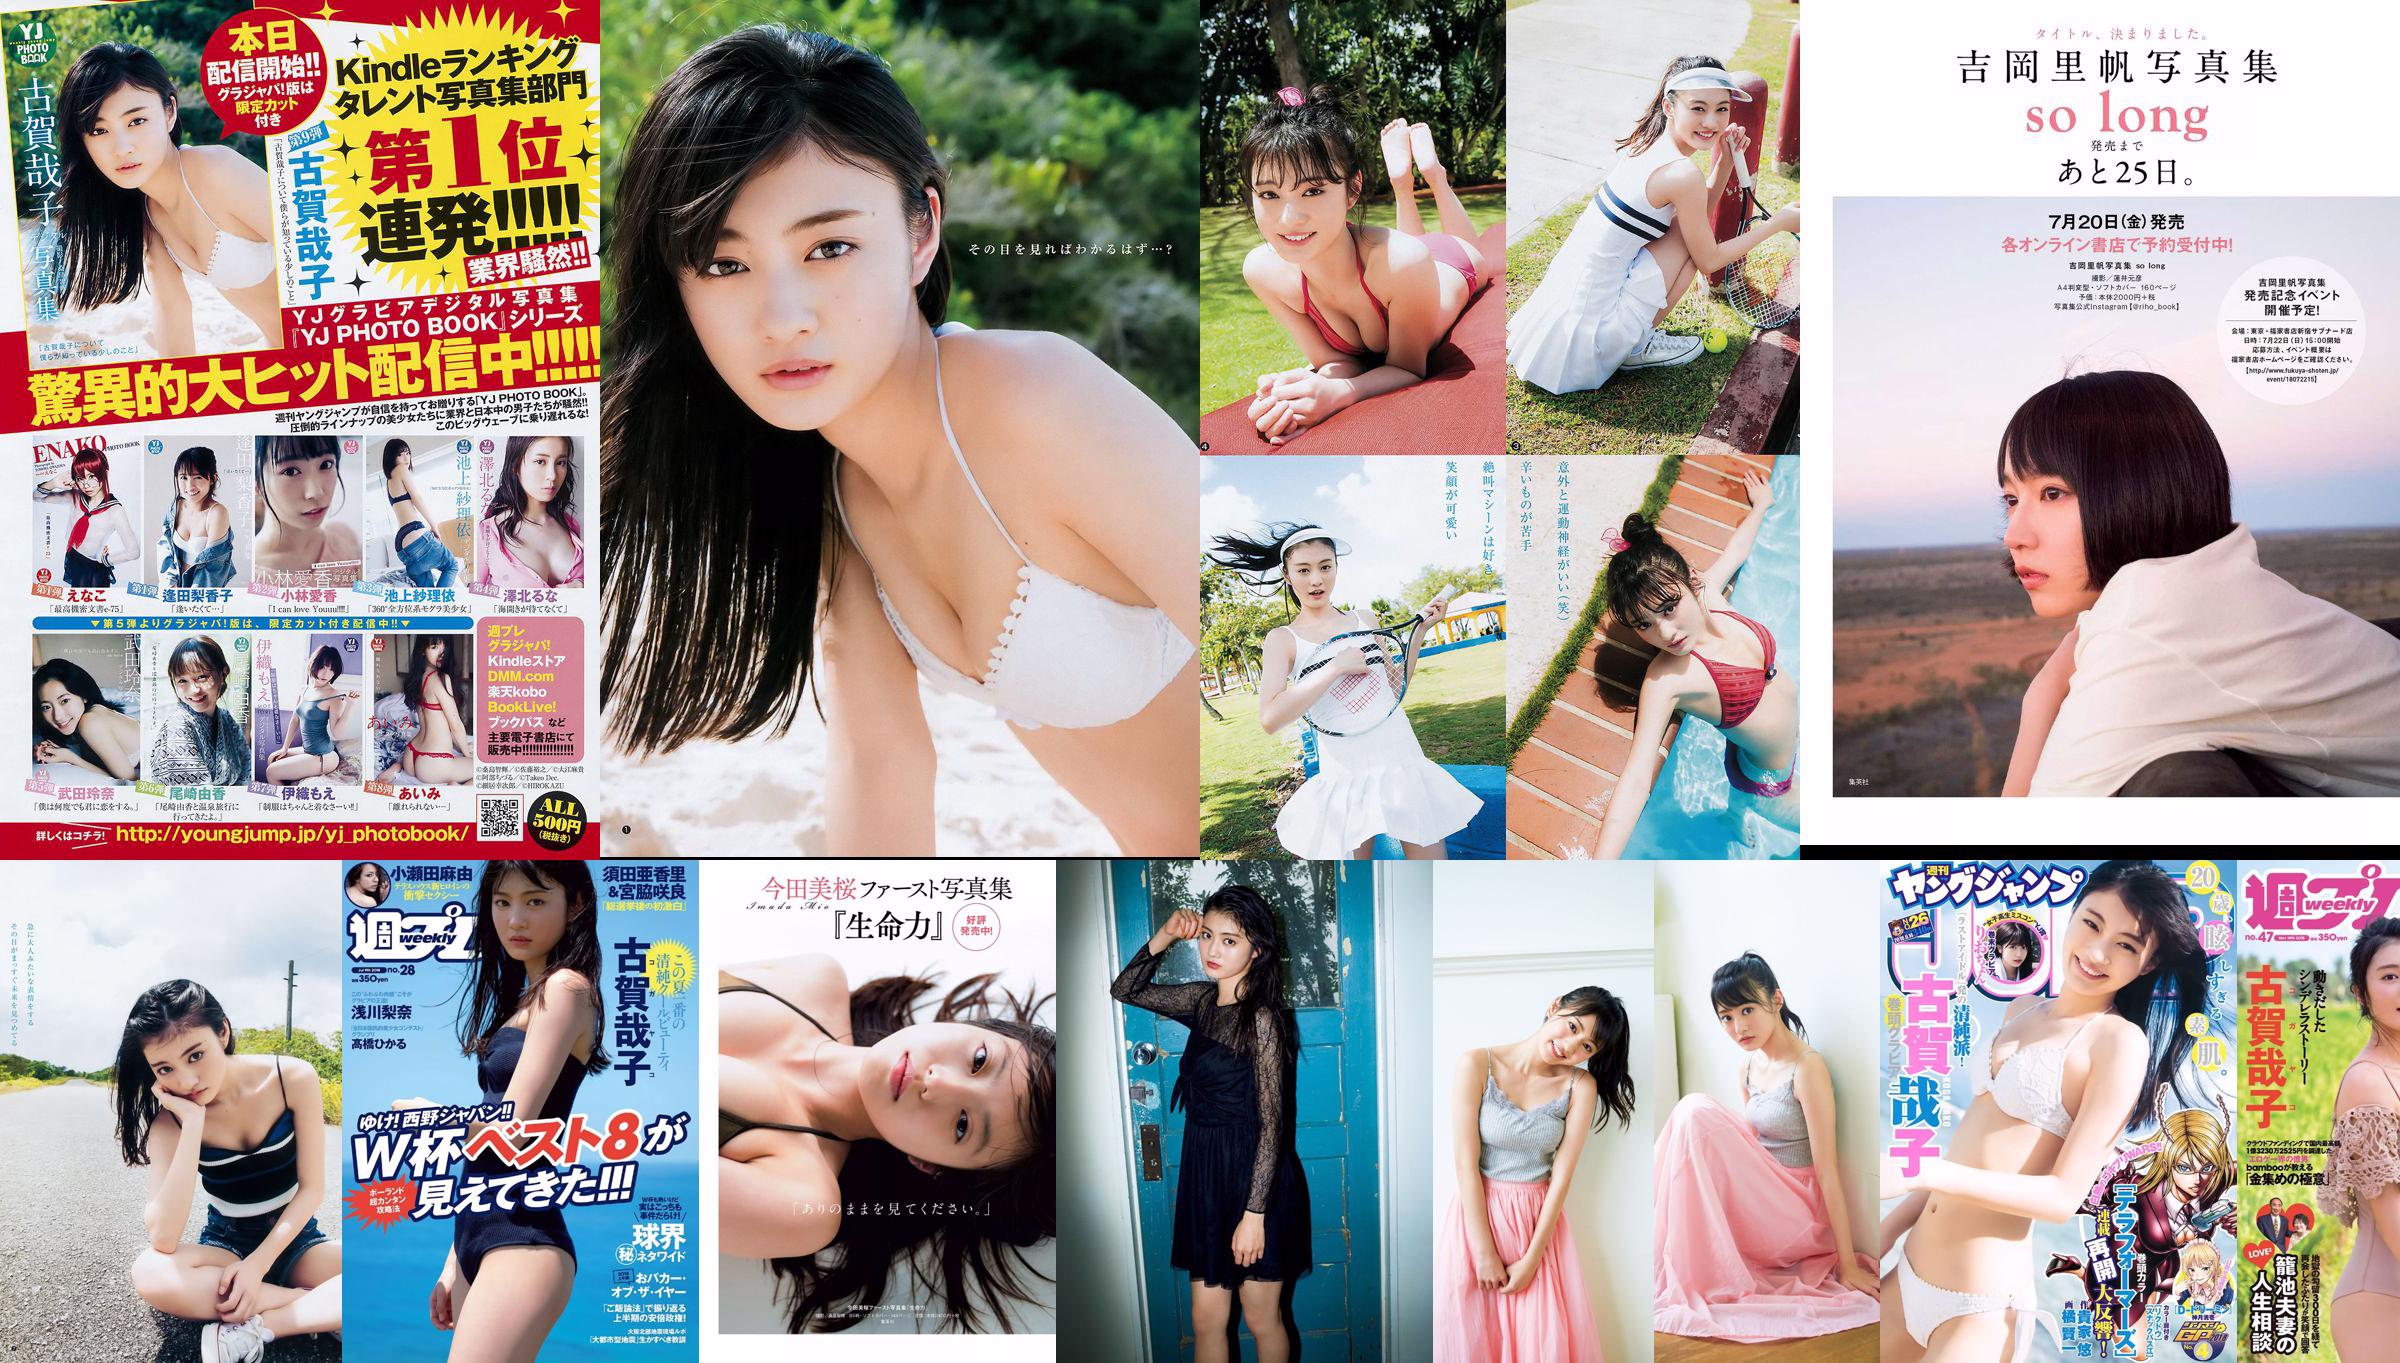 Yako Koga Rina Asakawa Hikaru Takahashi alom Nanami Saki Mayu Koseta [Weekly Playboy] 2018 No.28 Photograph No.48a5bb Page 1